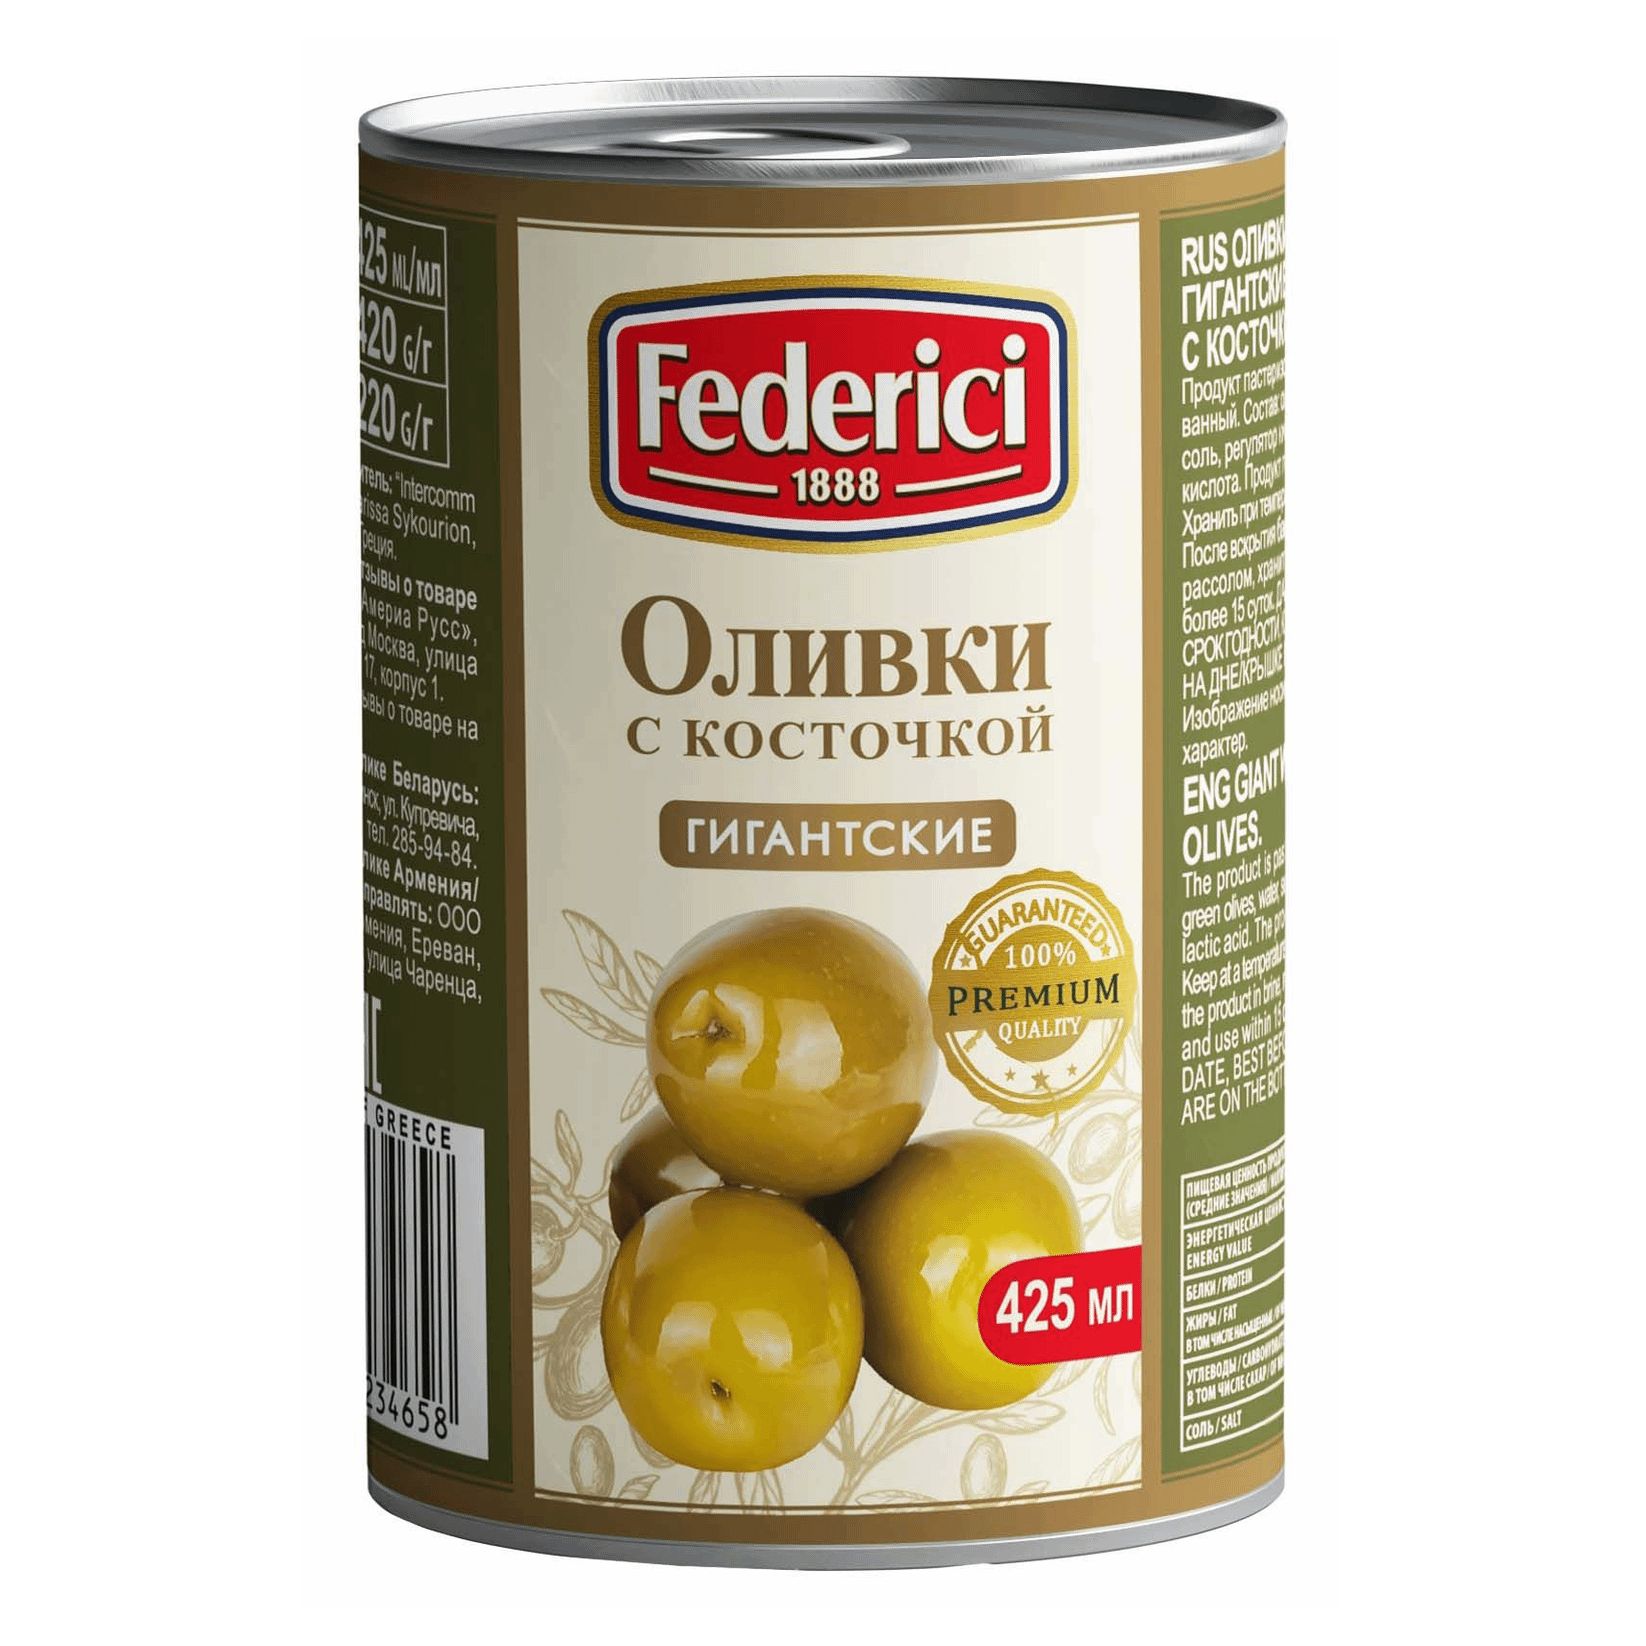 Маслины Federici Гигантские с косточкой, 420 г маслины iposea bella di cerignola 310 г